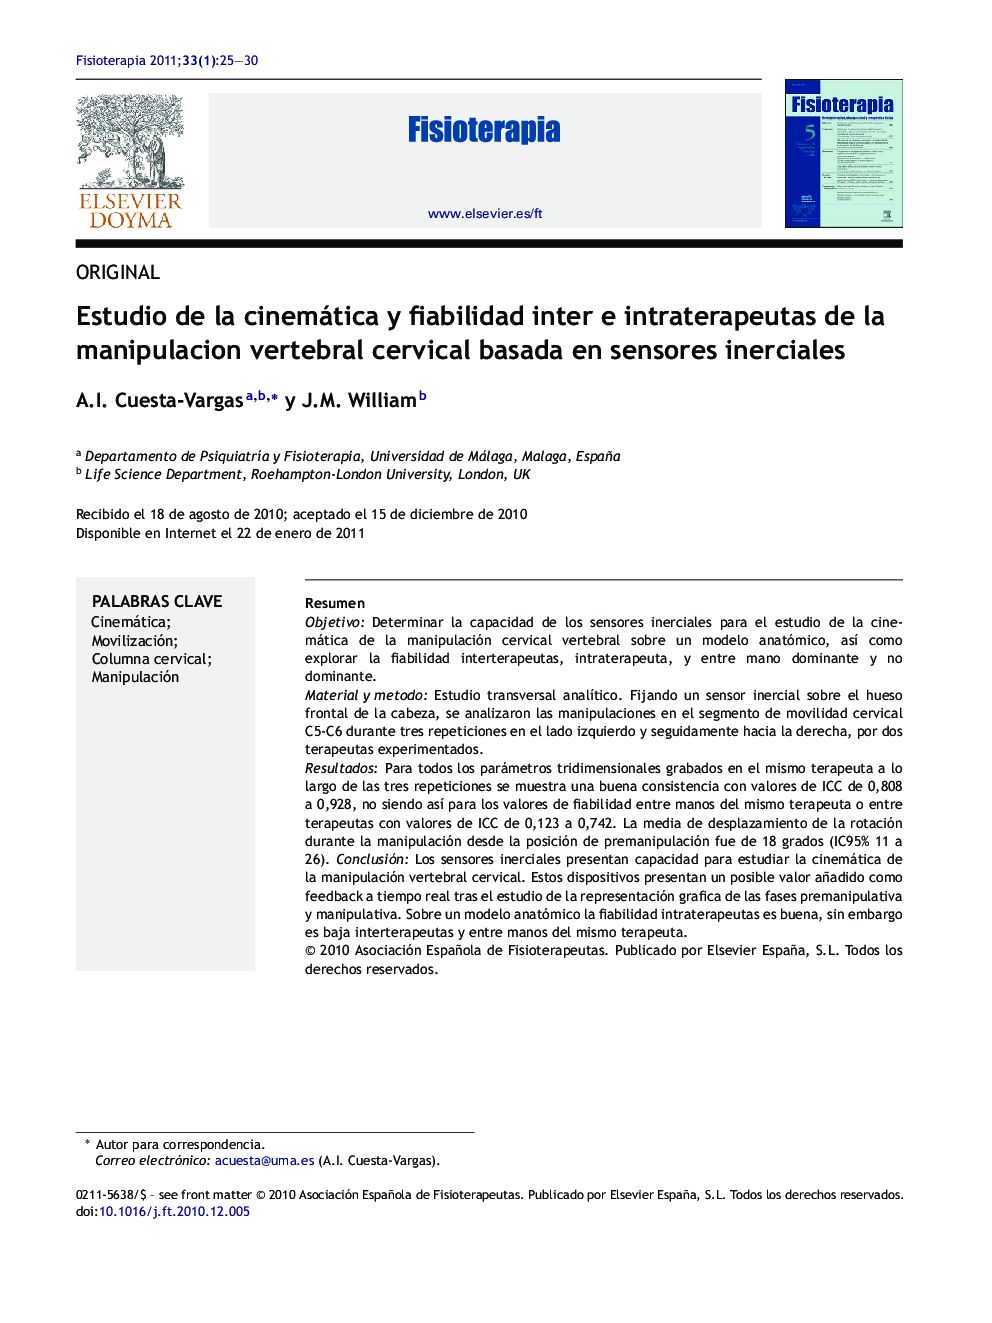 Estudio de la cinemática y fiabilidad inter e intraterapeutas de la manipulacion vertebral cervical basada en sensores inerciales